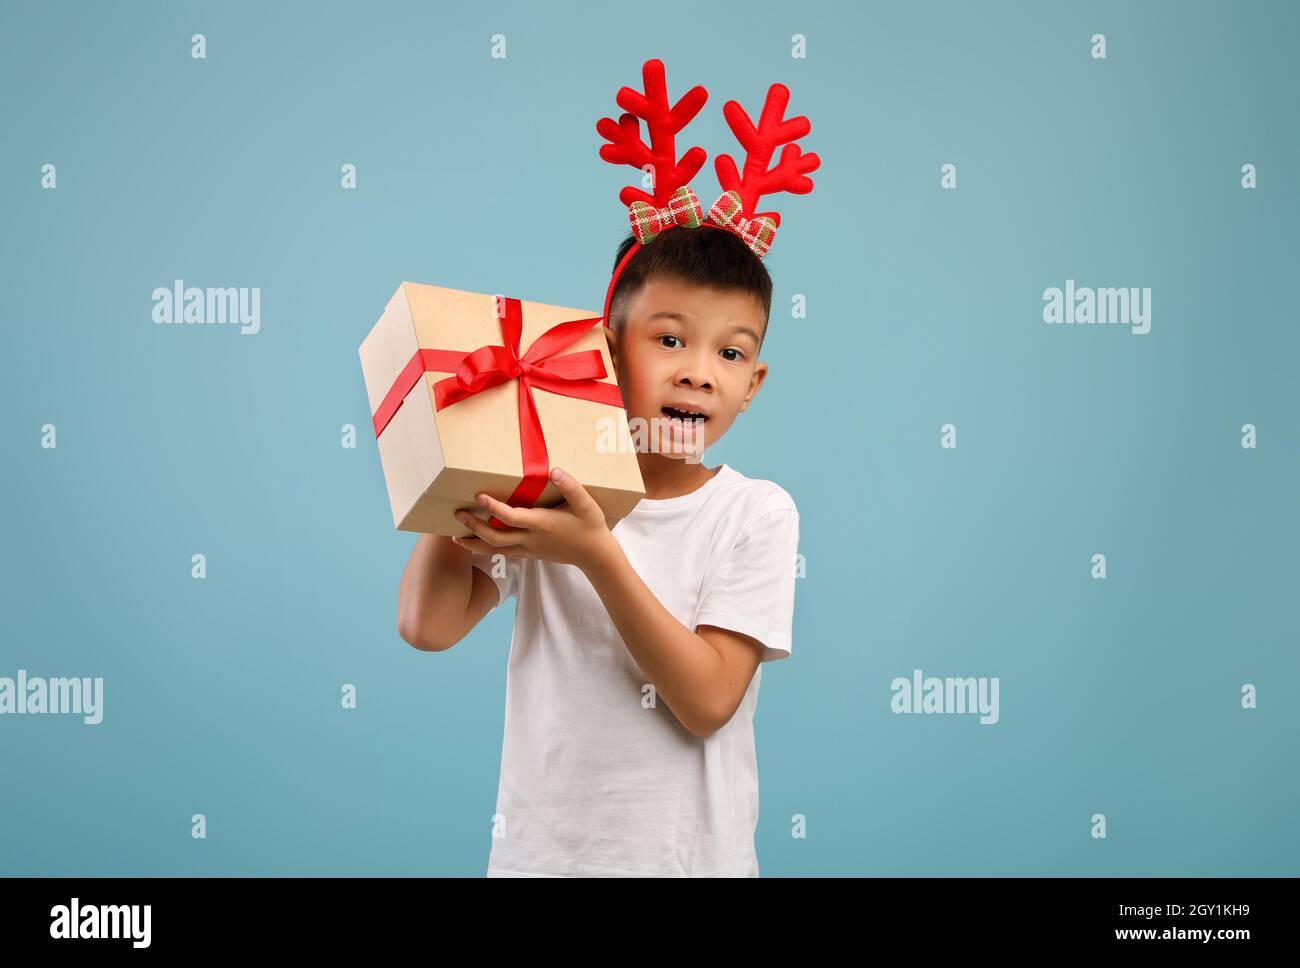 Boy Asiatico eccitato piccolo che indossa i corni di cervo di Natale che tiene la scatola presente Foto Stock